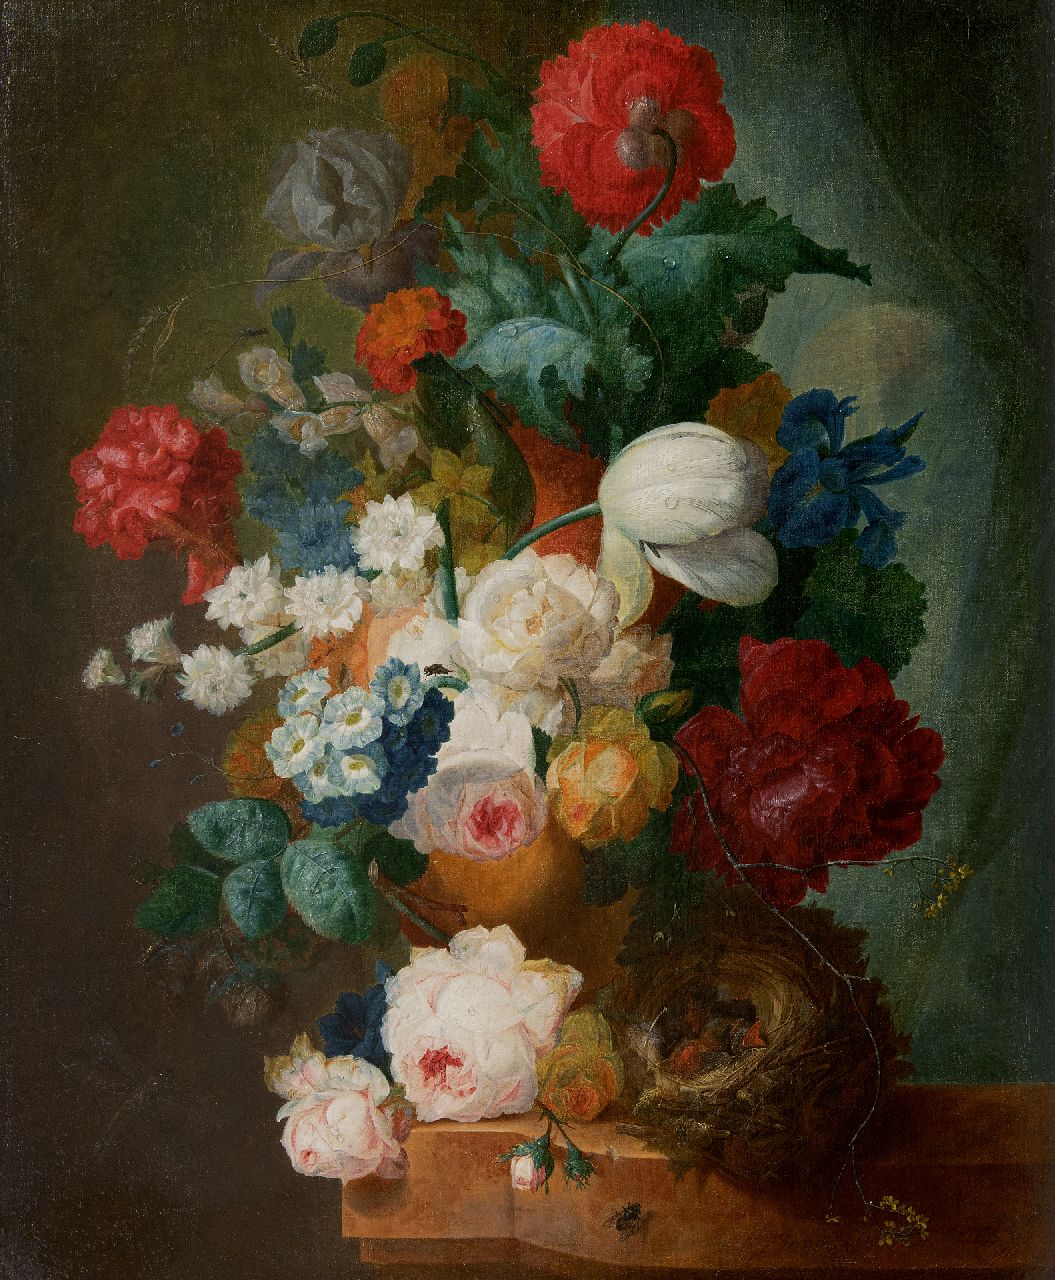 Os J. van | Jan van Os | Schilderijen te koop aangeboden | Stilleven met rozen, papavers en vogelnestje, olieverf op doek 66,3 x 55,0 cm, gesigneerd rechtsonder (draagt sleetse signatuur) en circa 1765